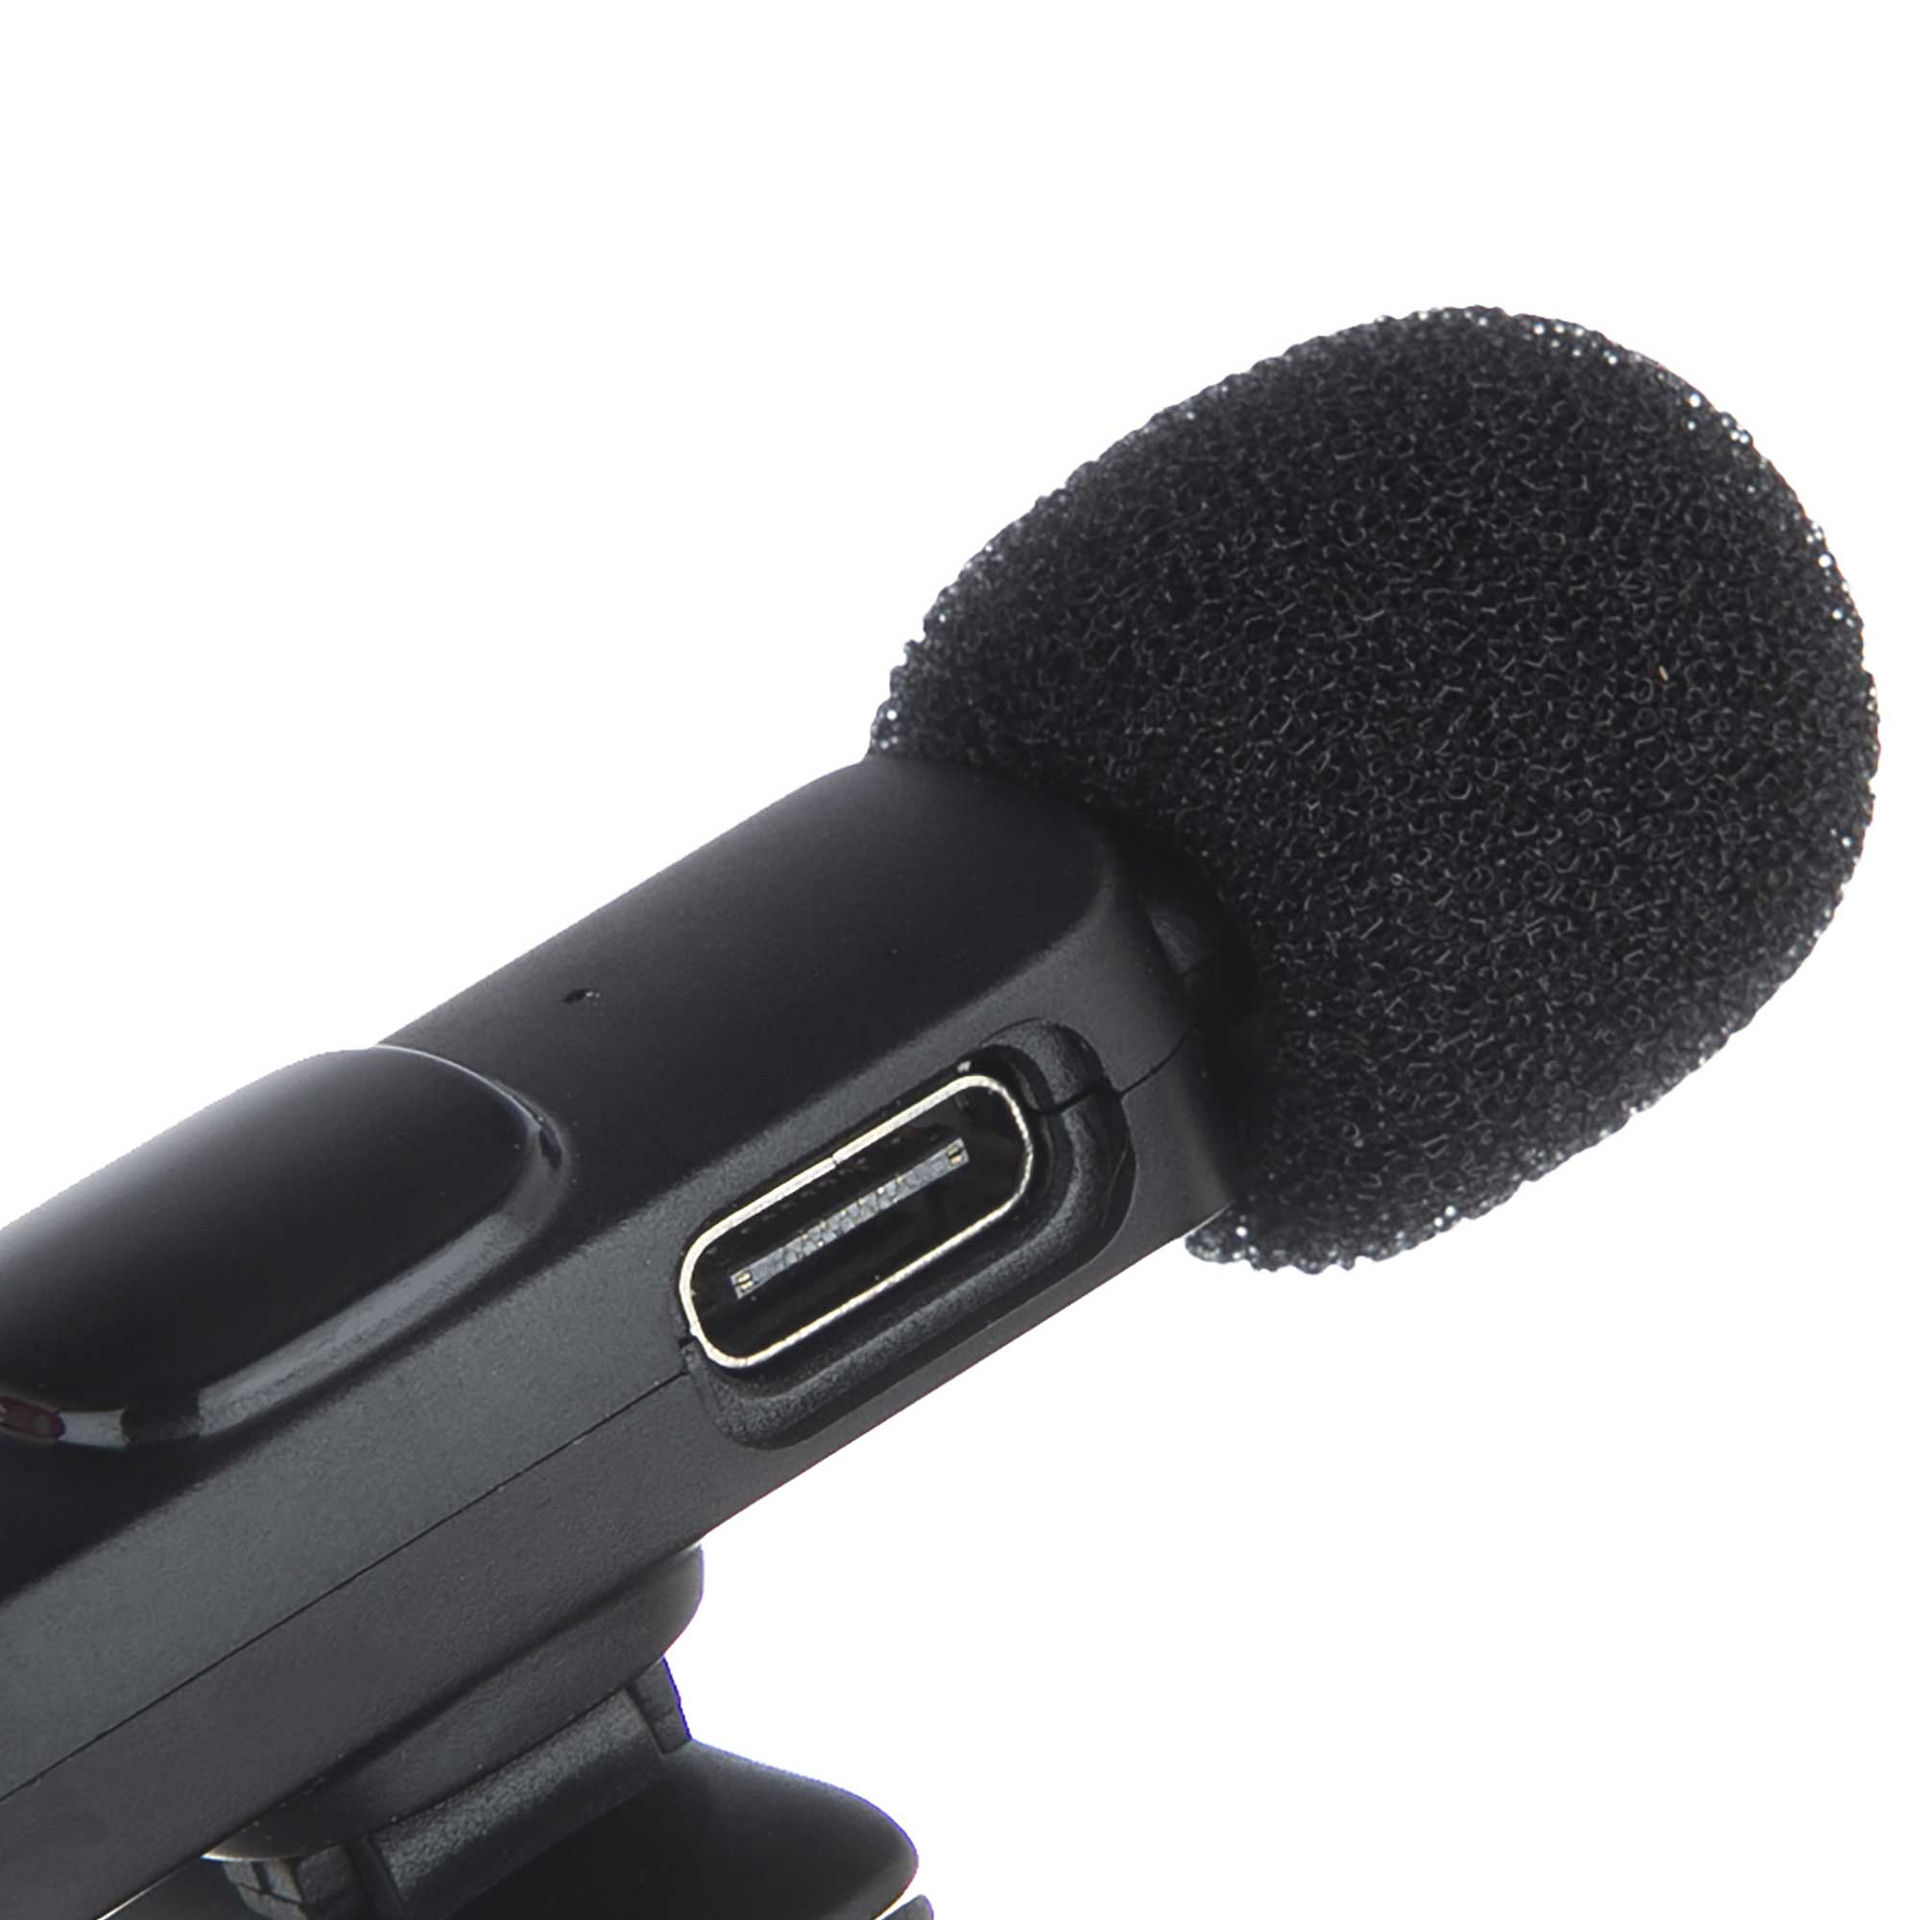 میکروفون یقه ای بدون سیم هیرو مدل MICROPHONE HERO K9 به همراه رابط LIGHTNING و Type-C